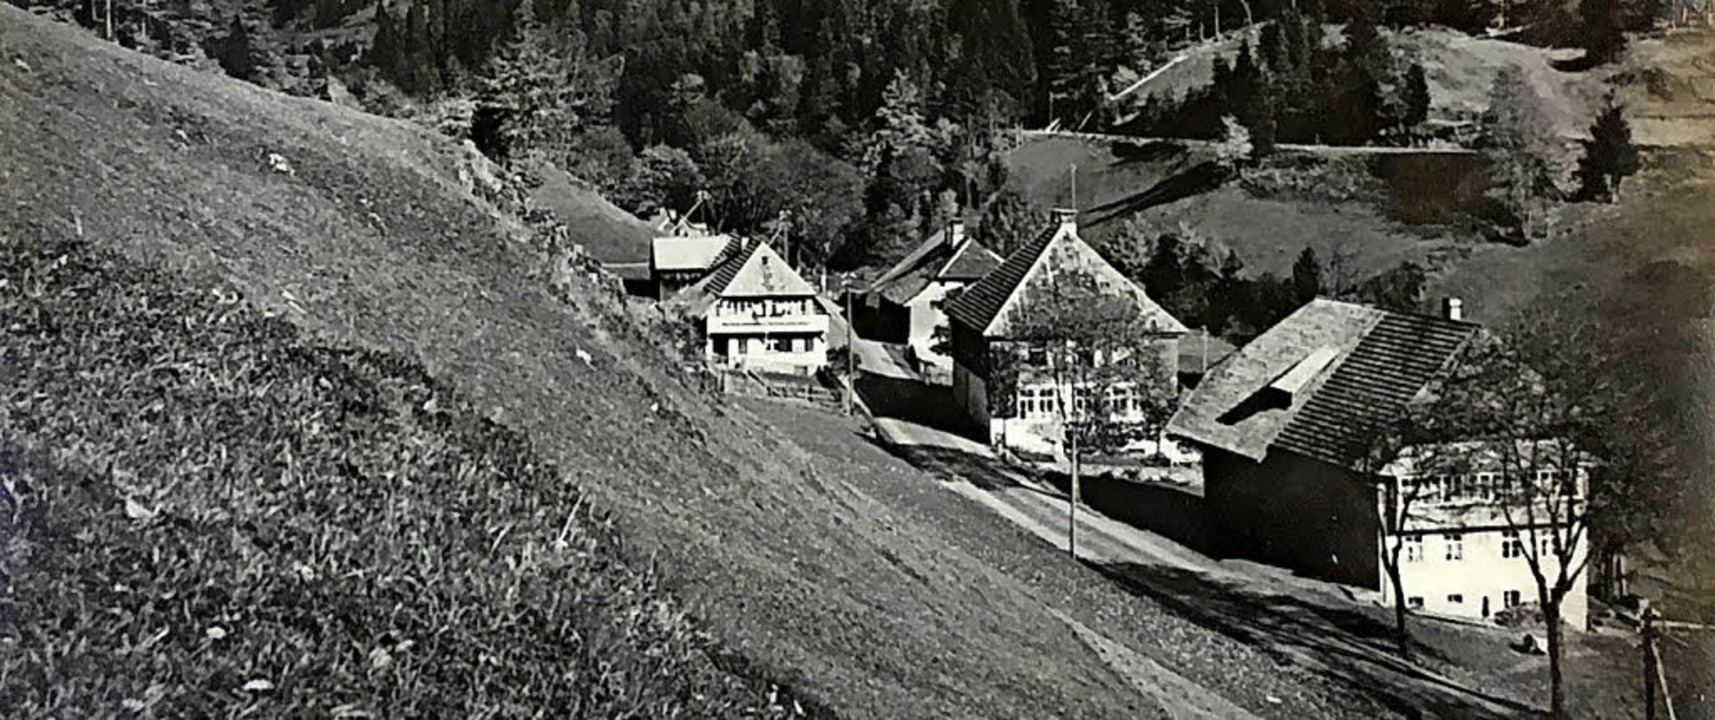 Da hat sich nicht viel verändert: Berghütte, aufgenommen im Jahr 1935  | Foto: bz